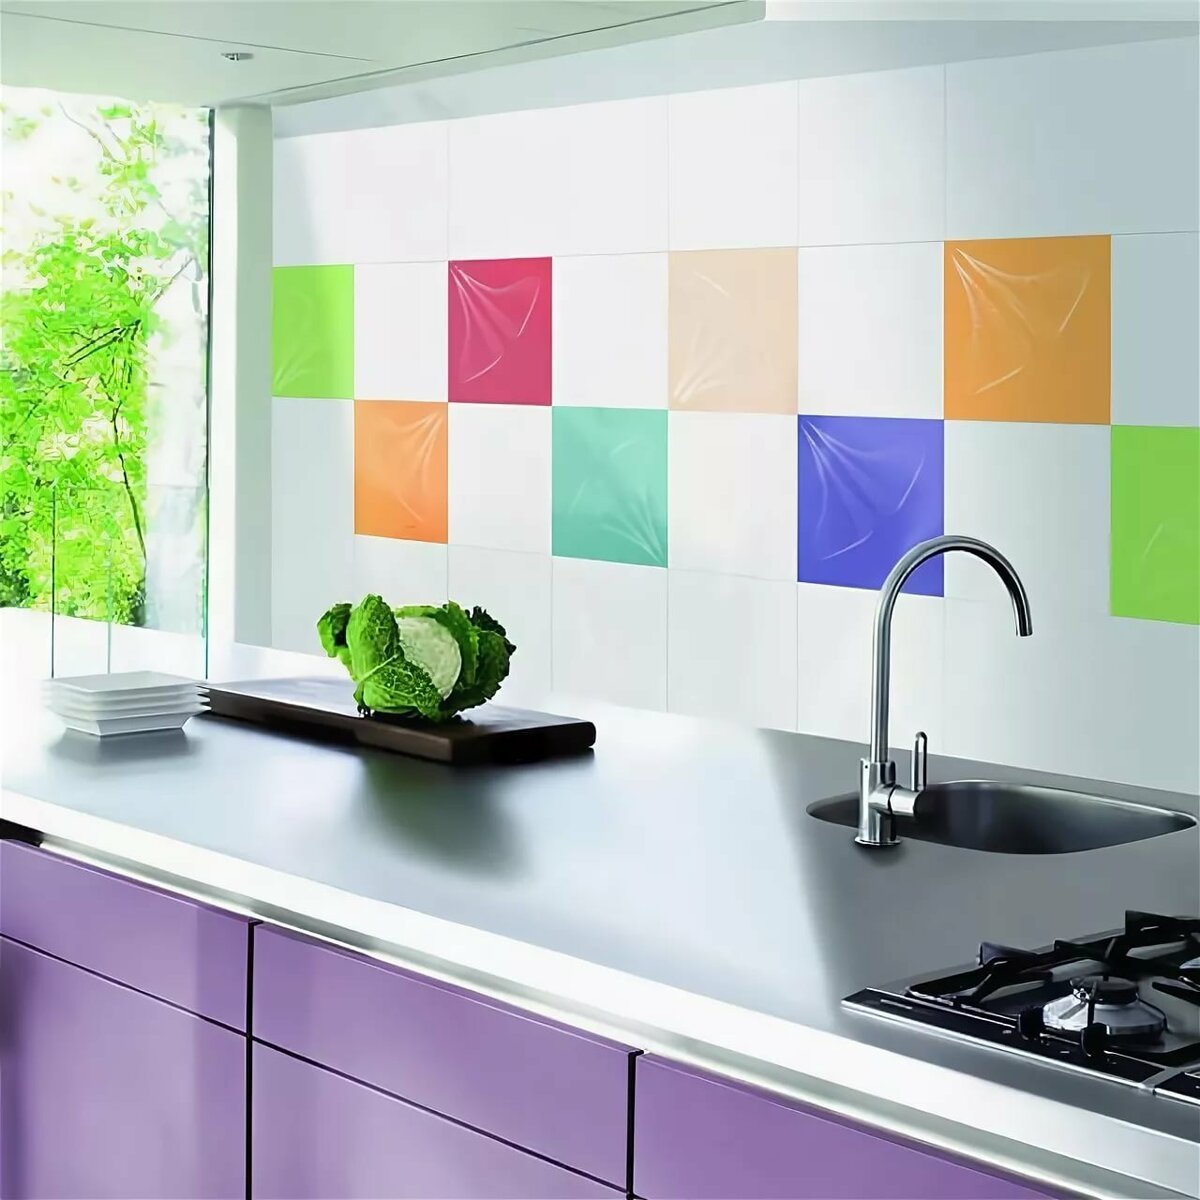 Подобрать плитку кухни. Плитка цветная для кухни. Фартук из разноцветной плитки. Яркая плитка на фартук. Фартук для кухни из плитки.